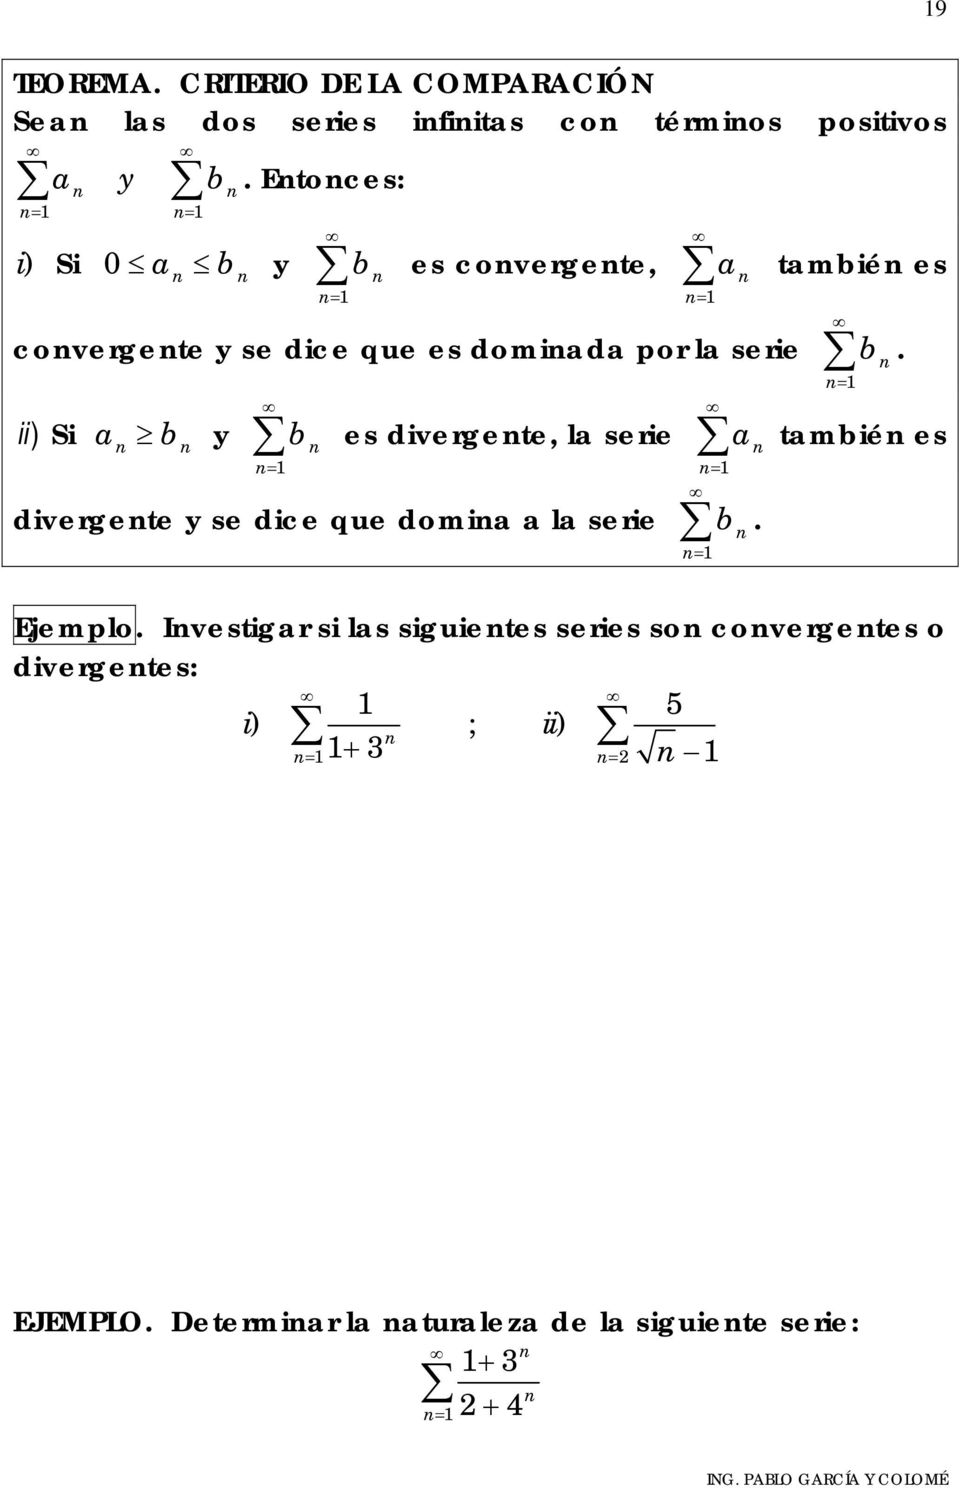 = ii ) i a b y b es divergete, la serie a tambié es = = divergete y se dice que domia a la serie b. = Ejemplo.